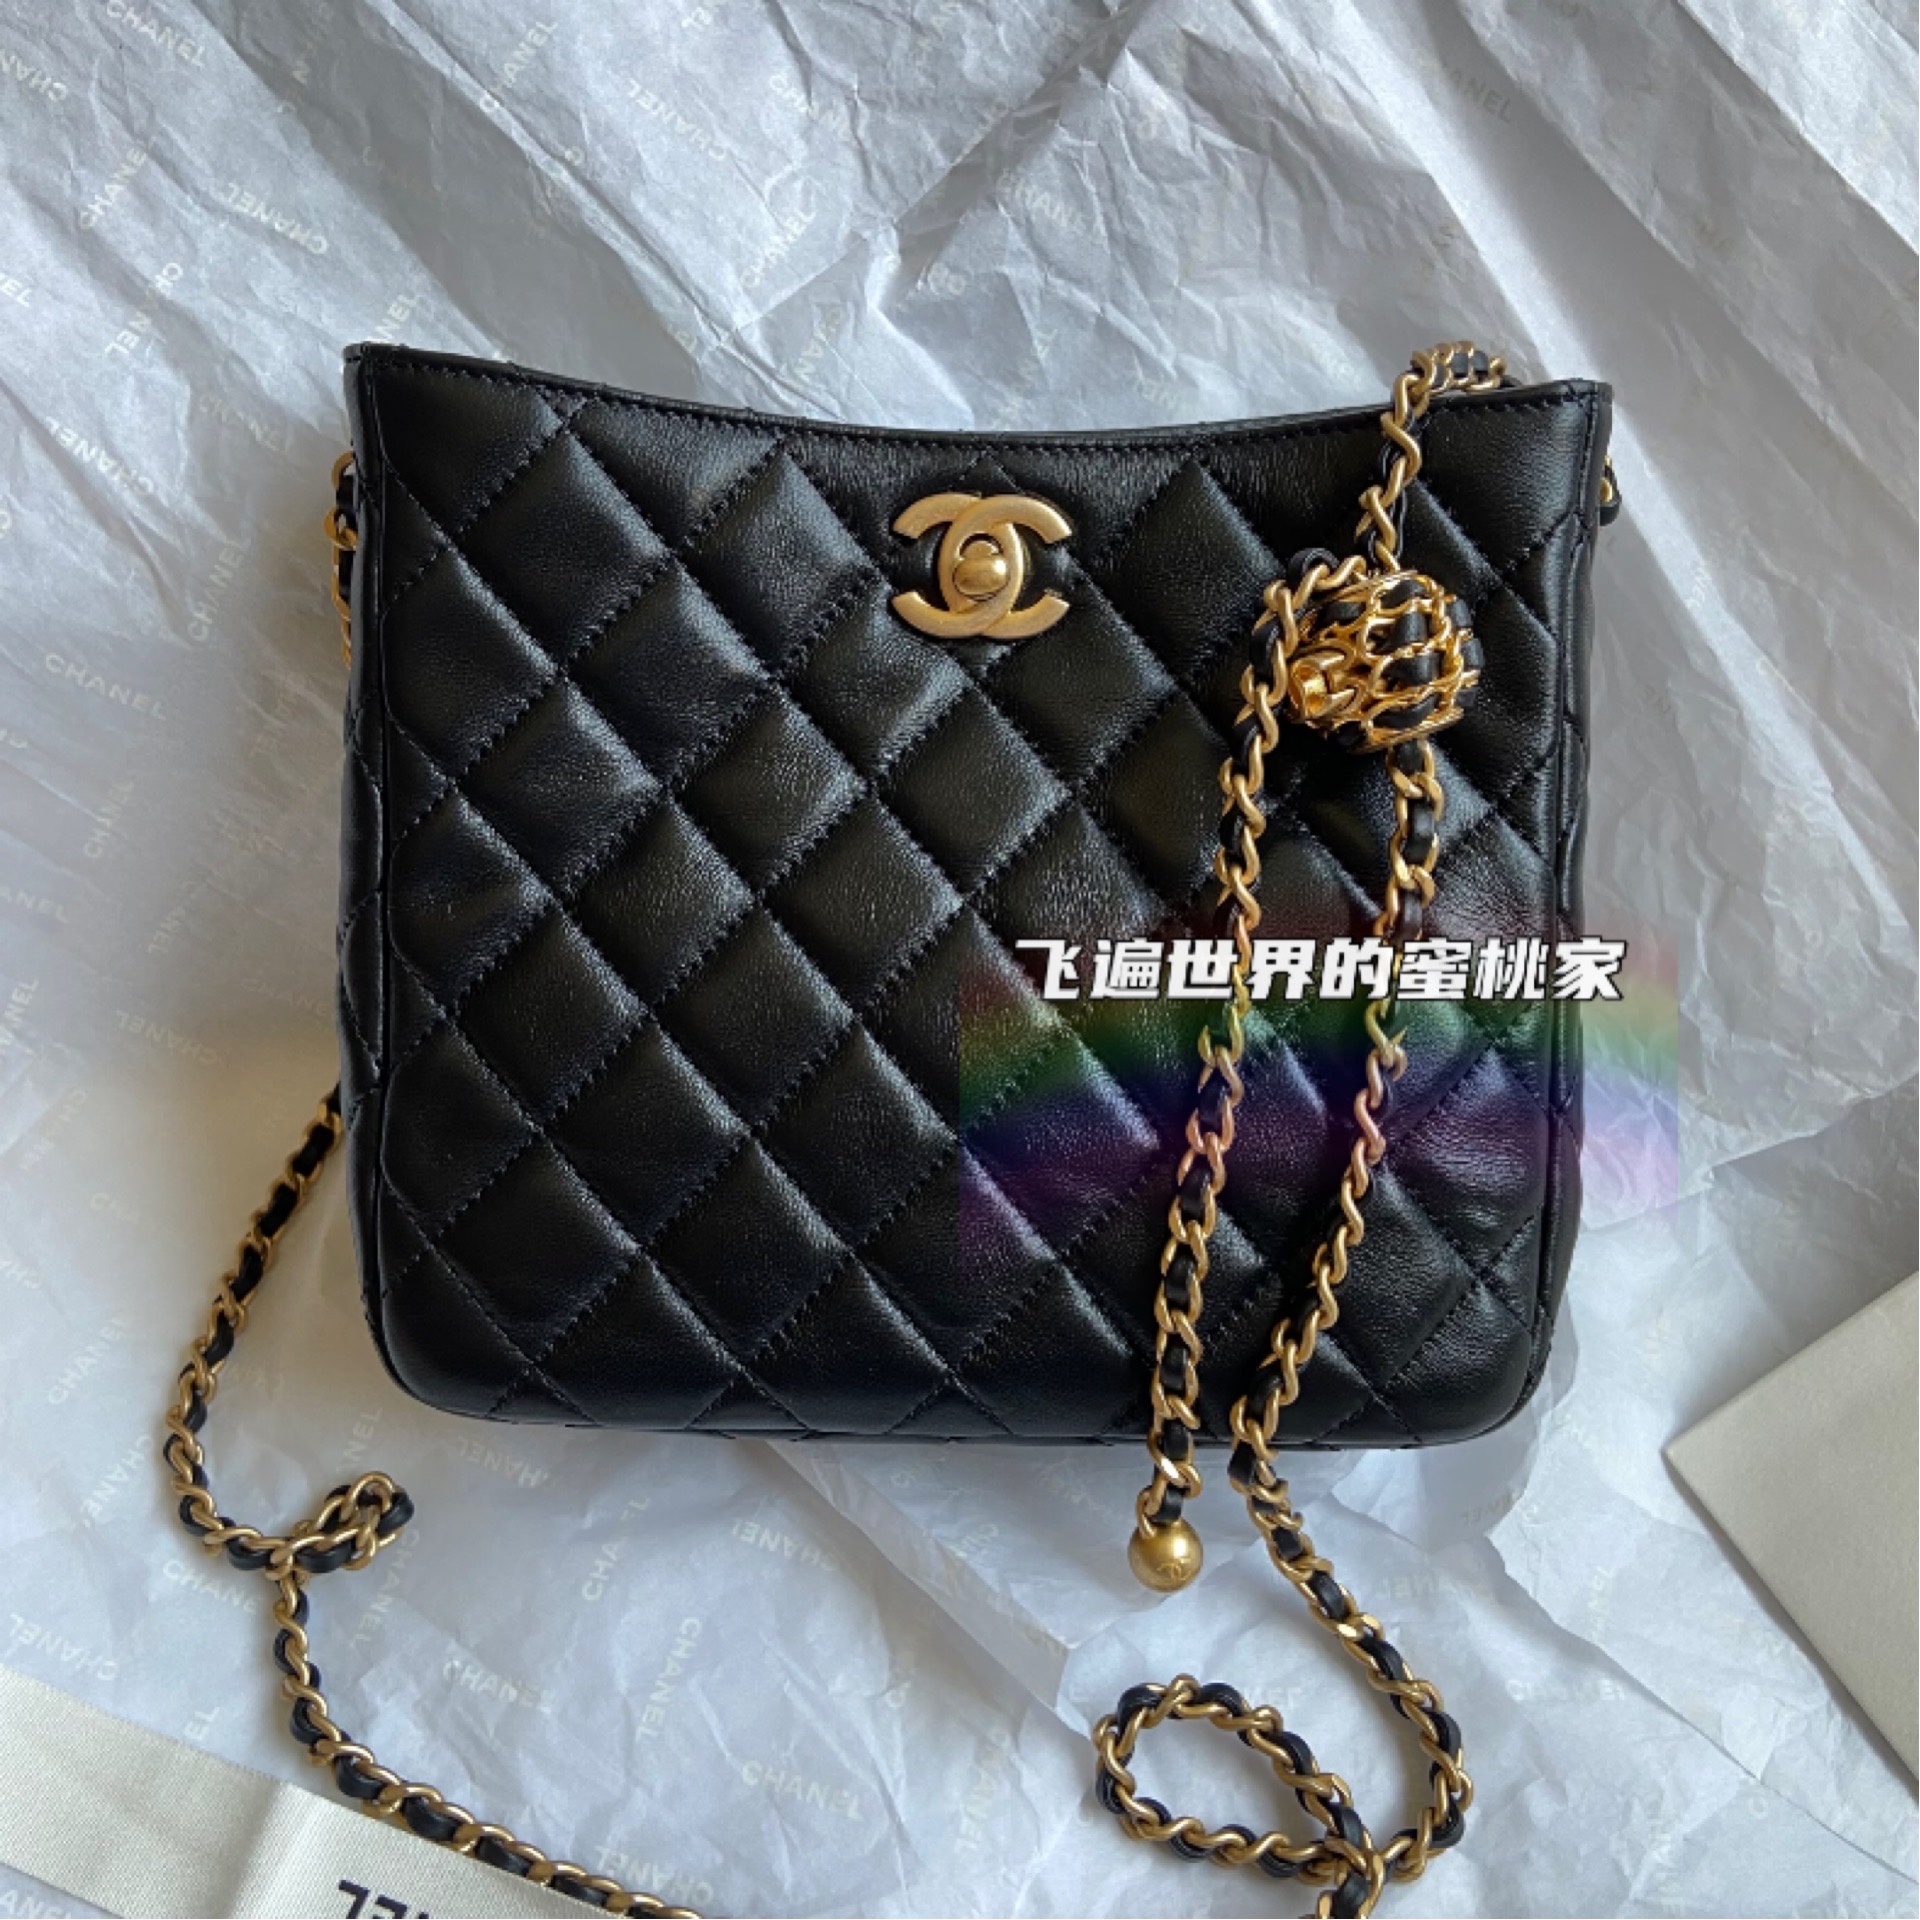 現貨香奈兒Chanel 22s 新款復古荔枝皮字母鏈條腋下包hobo單肩包- Taobao